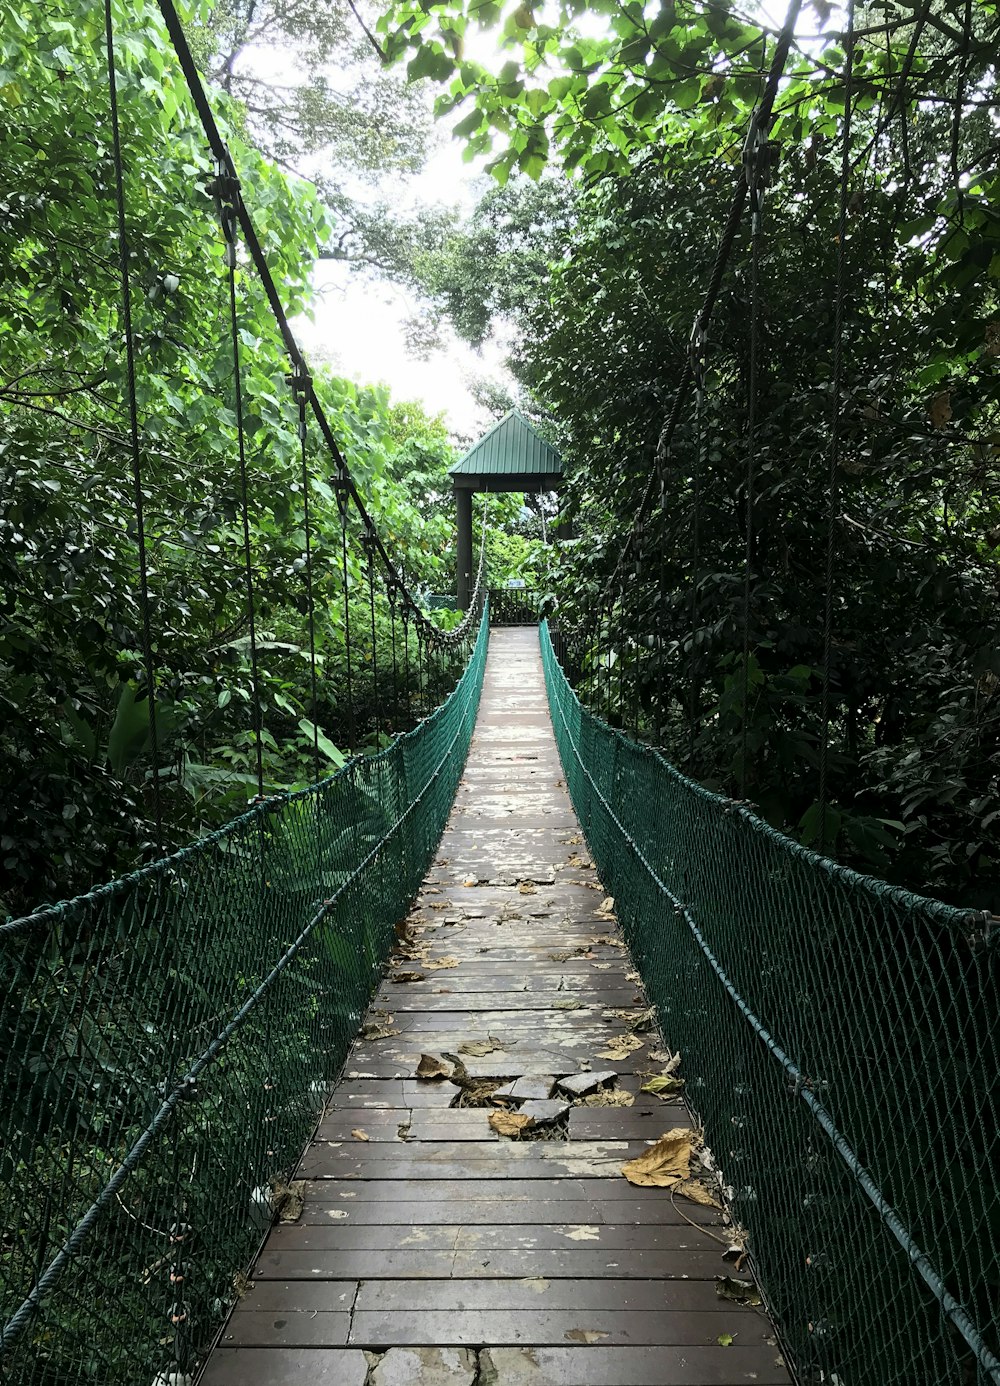 ponte suspensa marrom